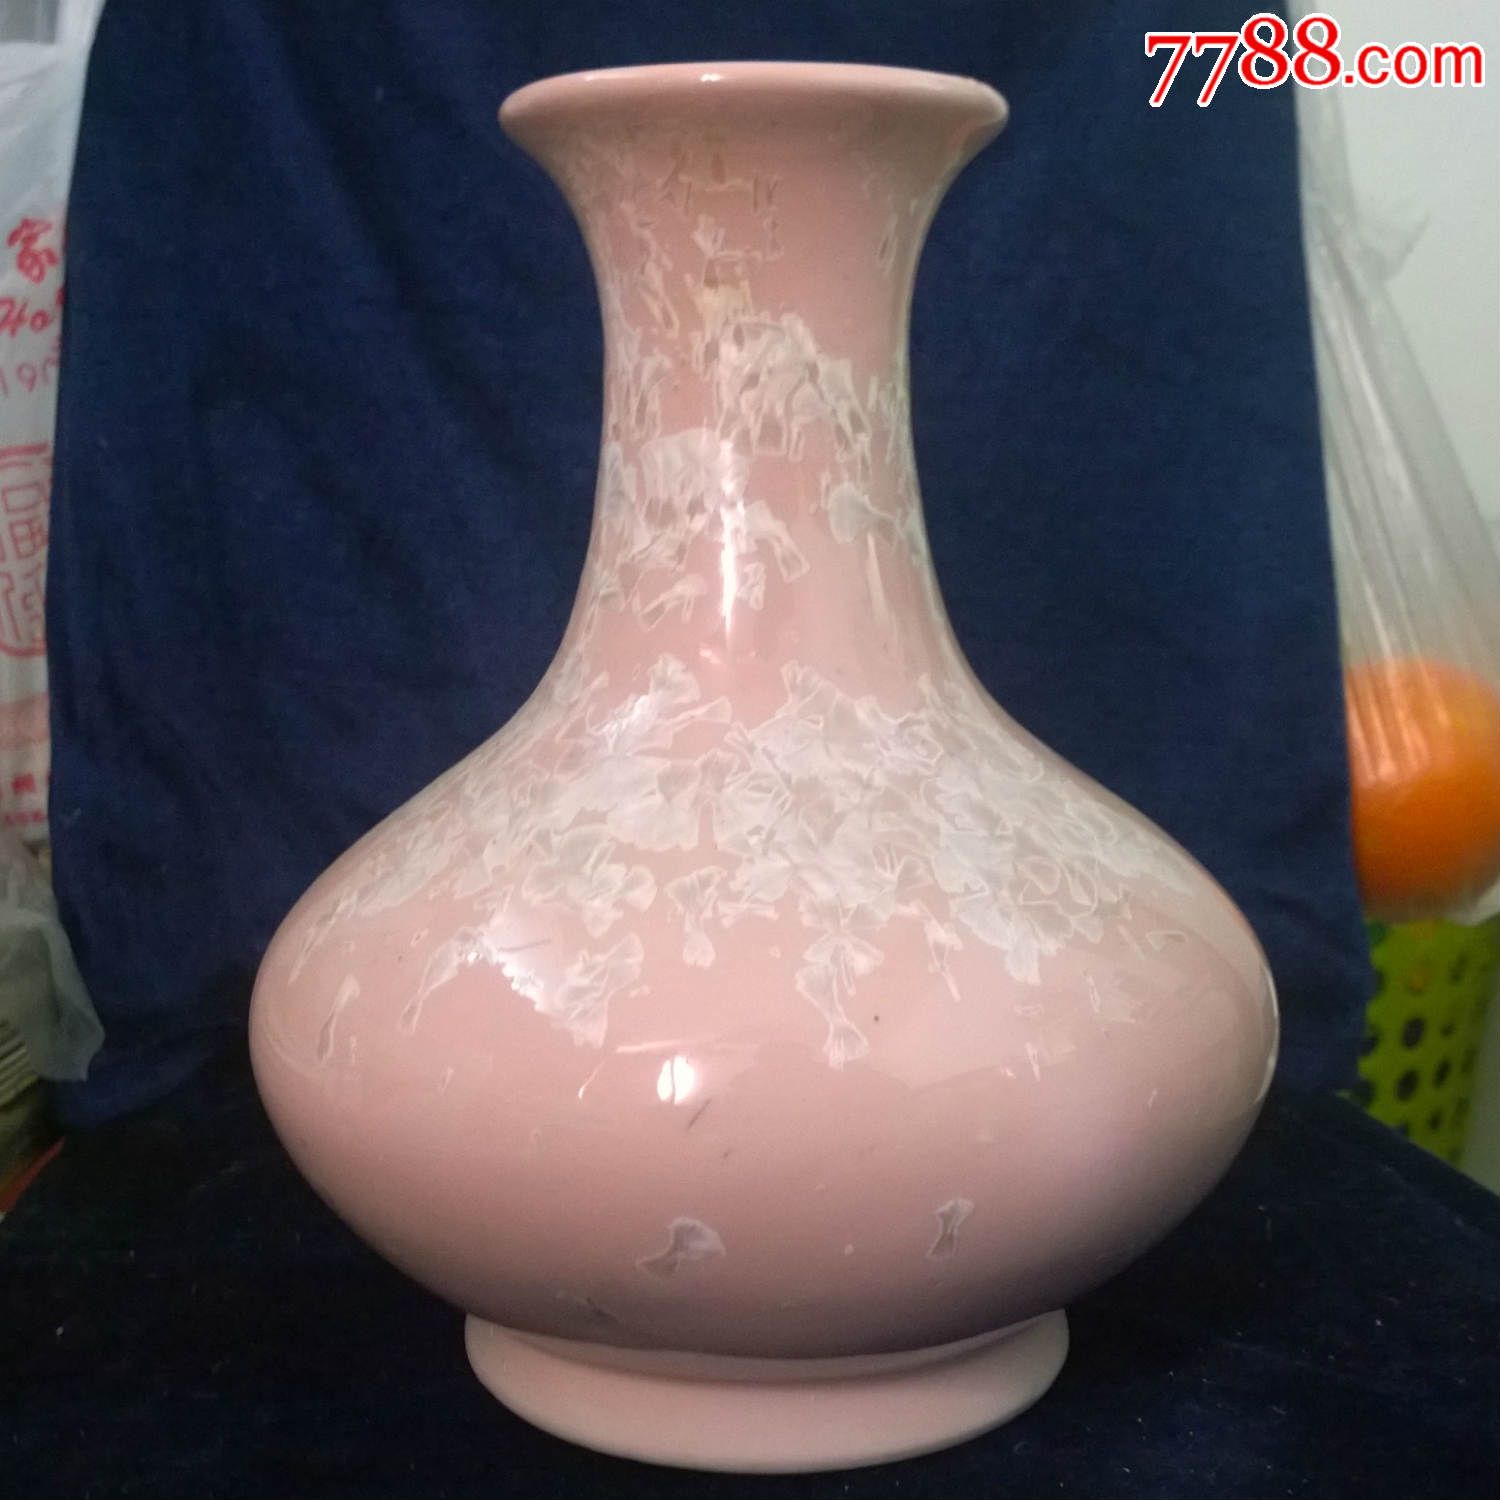 神手结晶釉花瓶1个辽宁省硅酸盐研究所陶瓷实验厂